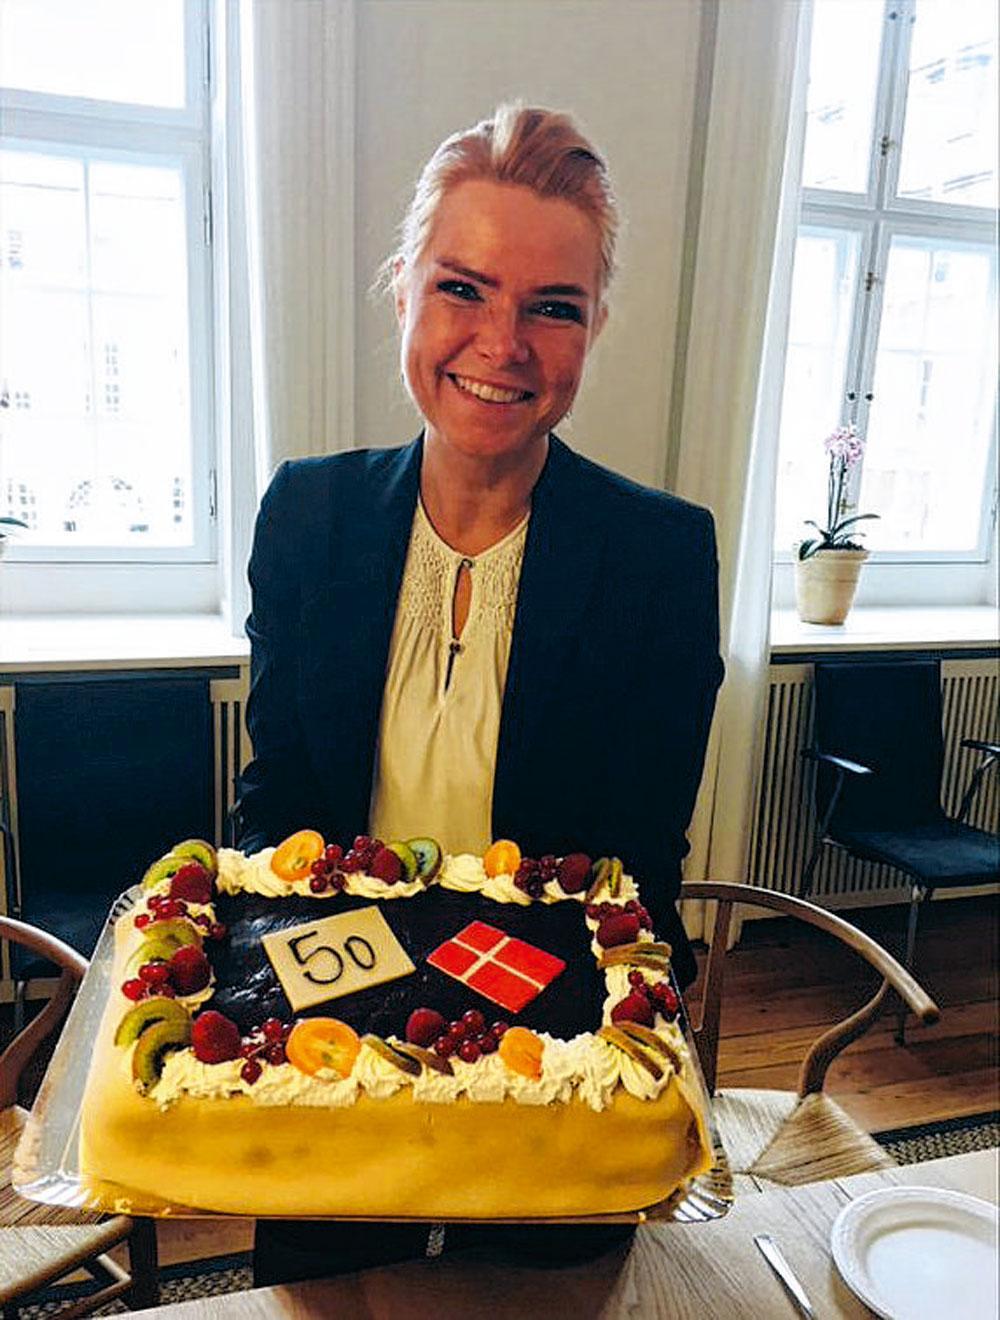 Inger Støjberg, ministre de l'Immigration, avec son gâteau, sur Facebook.